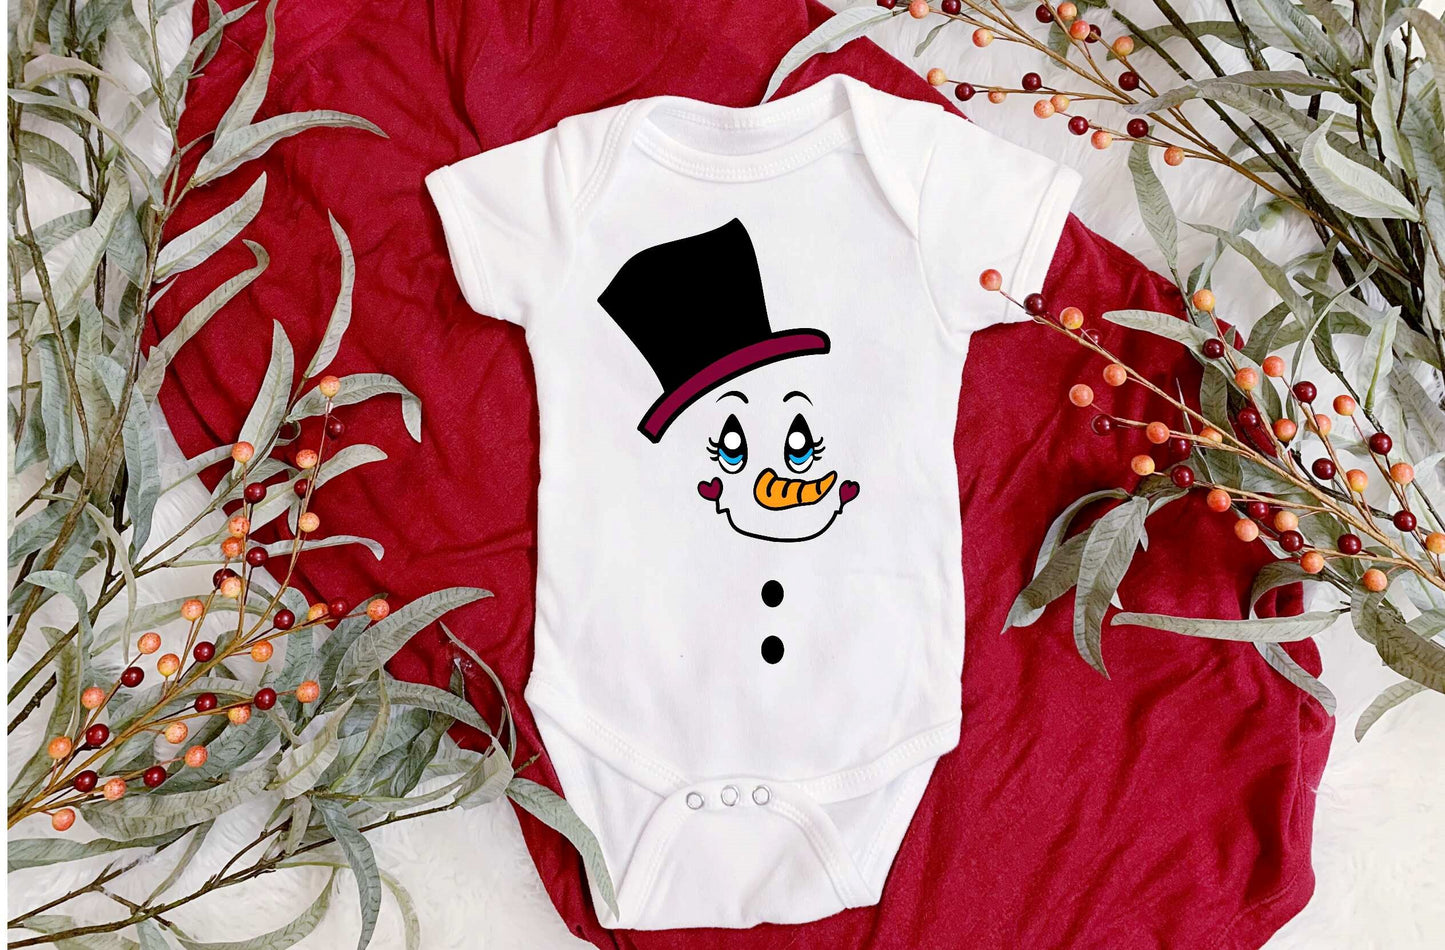 Snowman 2 Infant Onesie